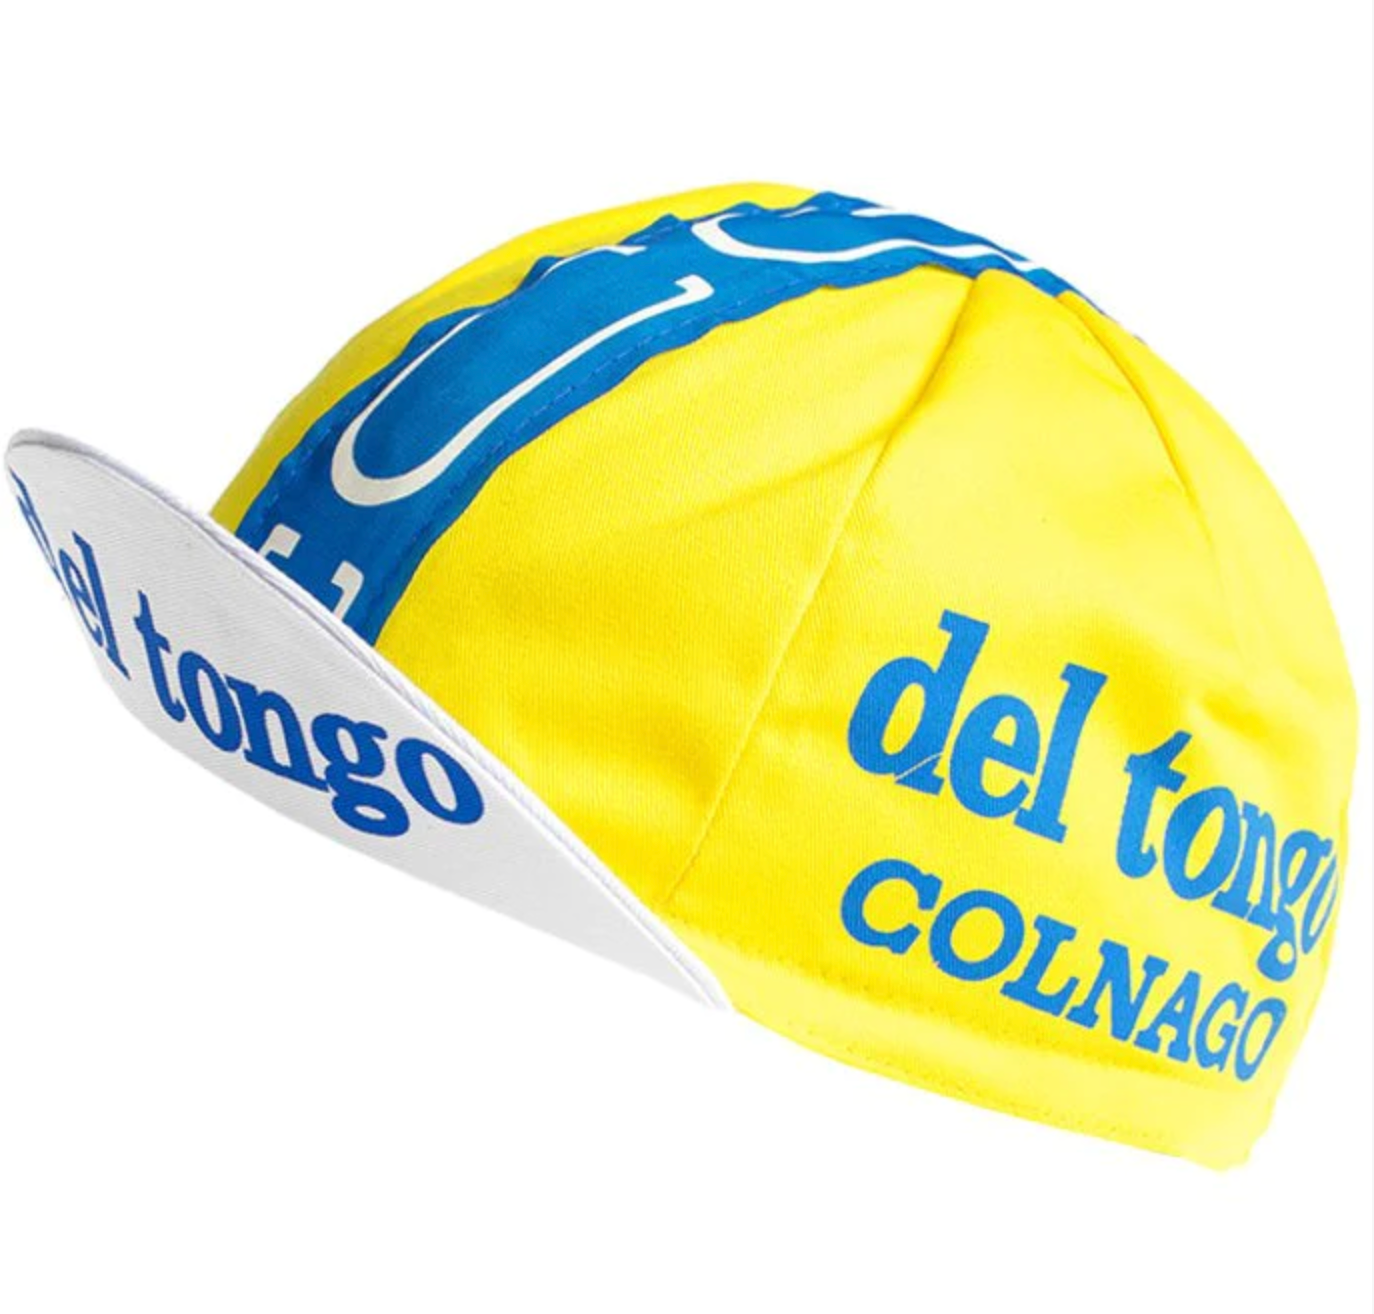 Del Tongo Colnago Retro Cycling Cap